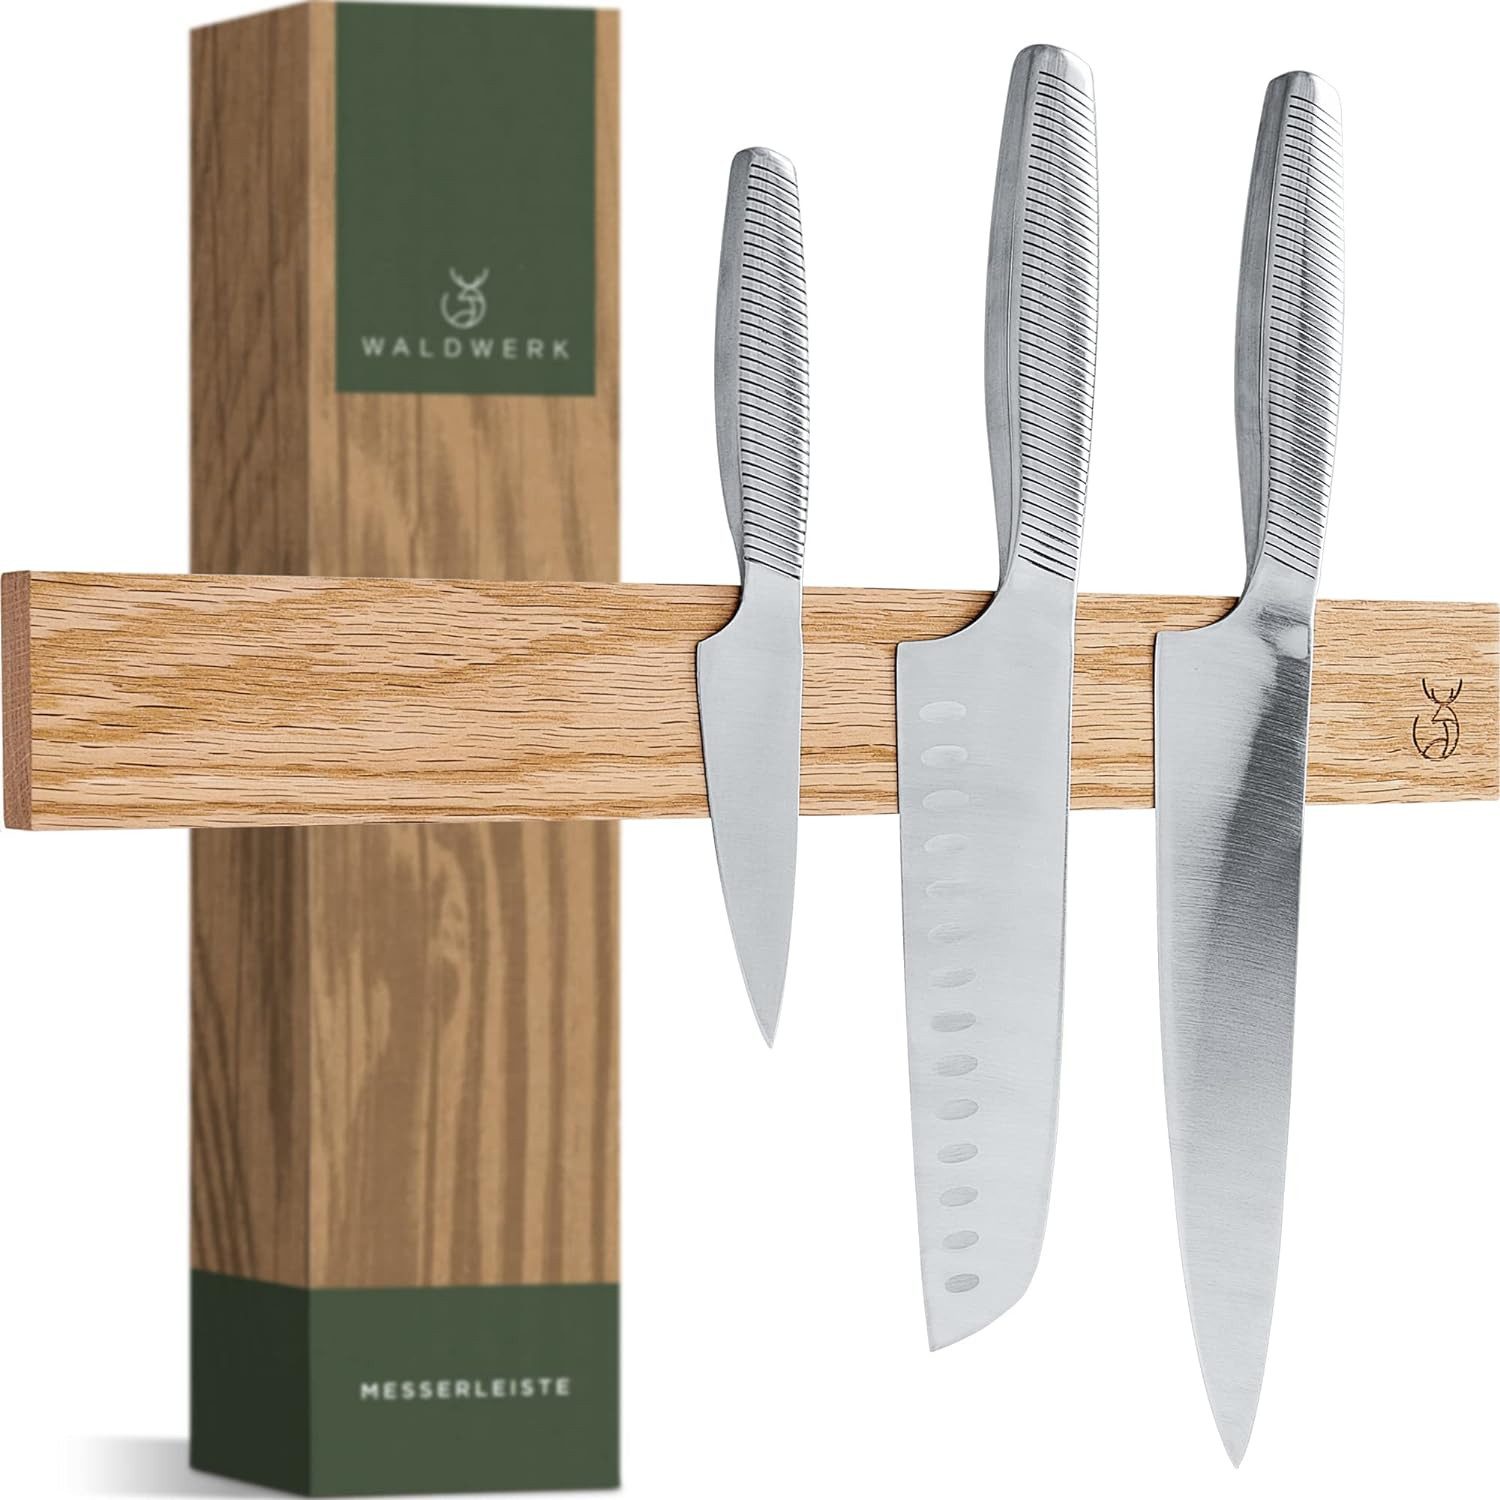 Waldwerk Wand-Magnet Messerhalter - Magnetleiste Messer (40x5cm) - Magnetleiste aus edlem Eichenholz, für schwere Messer - Messer Magnetleiste zum Kleben oder Schrauben